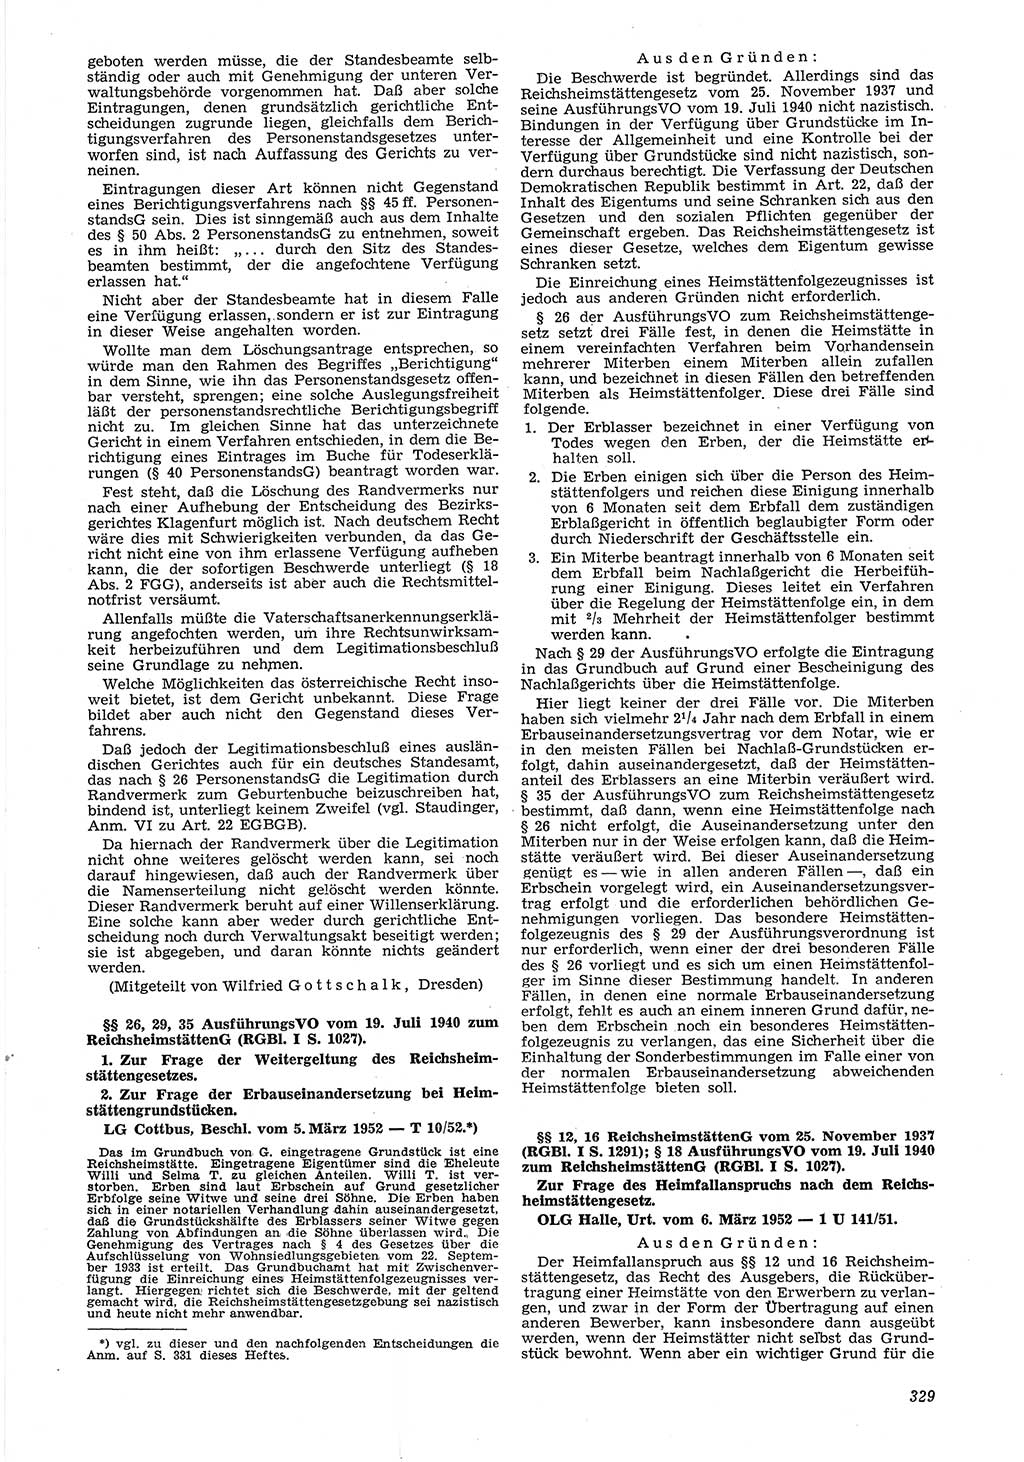 Neue Justiz (NJ), Zeitschrift für Recht und Rechtswissenschaft [Deutsche Demokratische Republik (DDR)], 6. Jahrgang 1952, Seite 329 (NJ DDR 1952, S. 329)